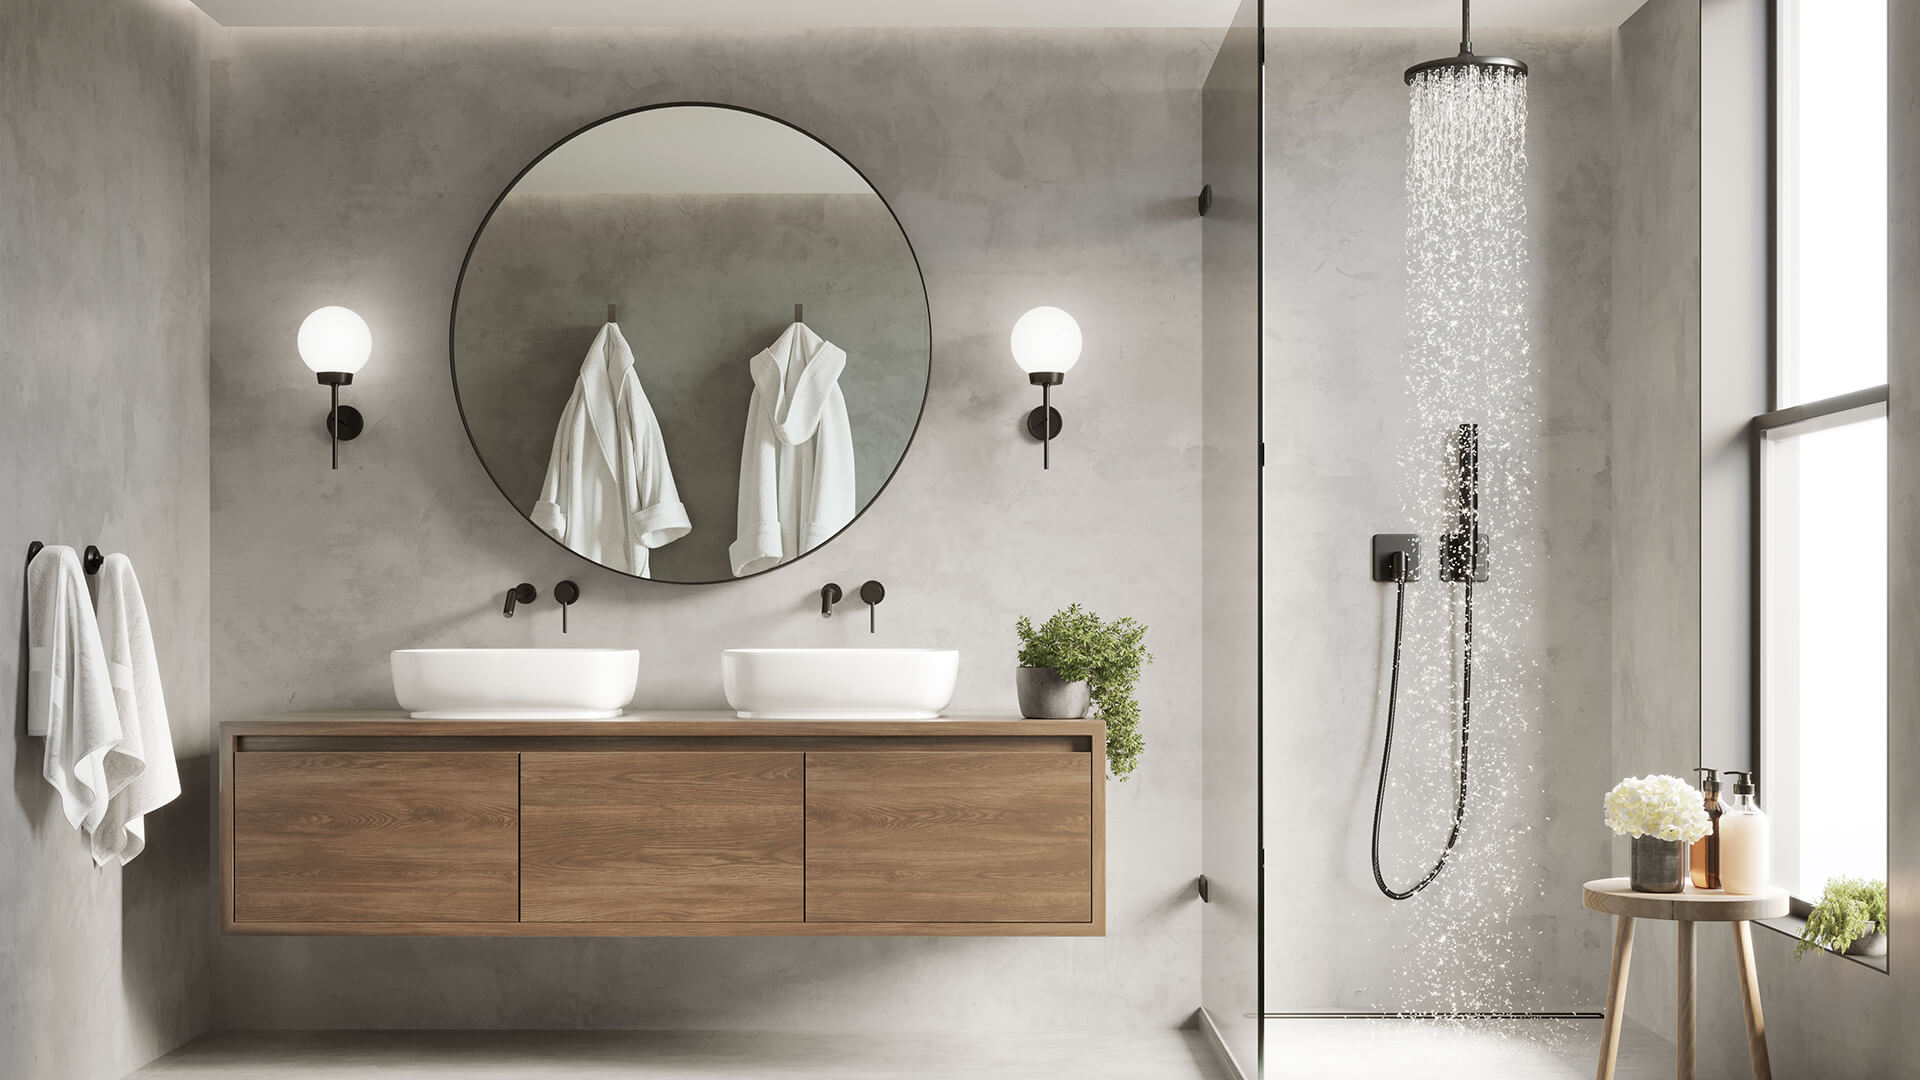 Modern Bathroom Trends For 2021 Build, Modern Bathroom Tile Ideas 2021